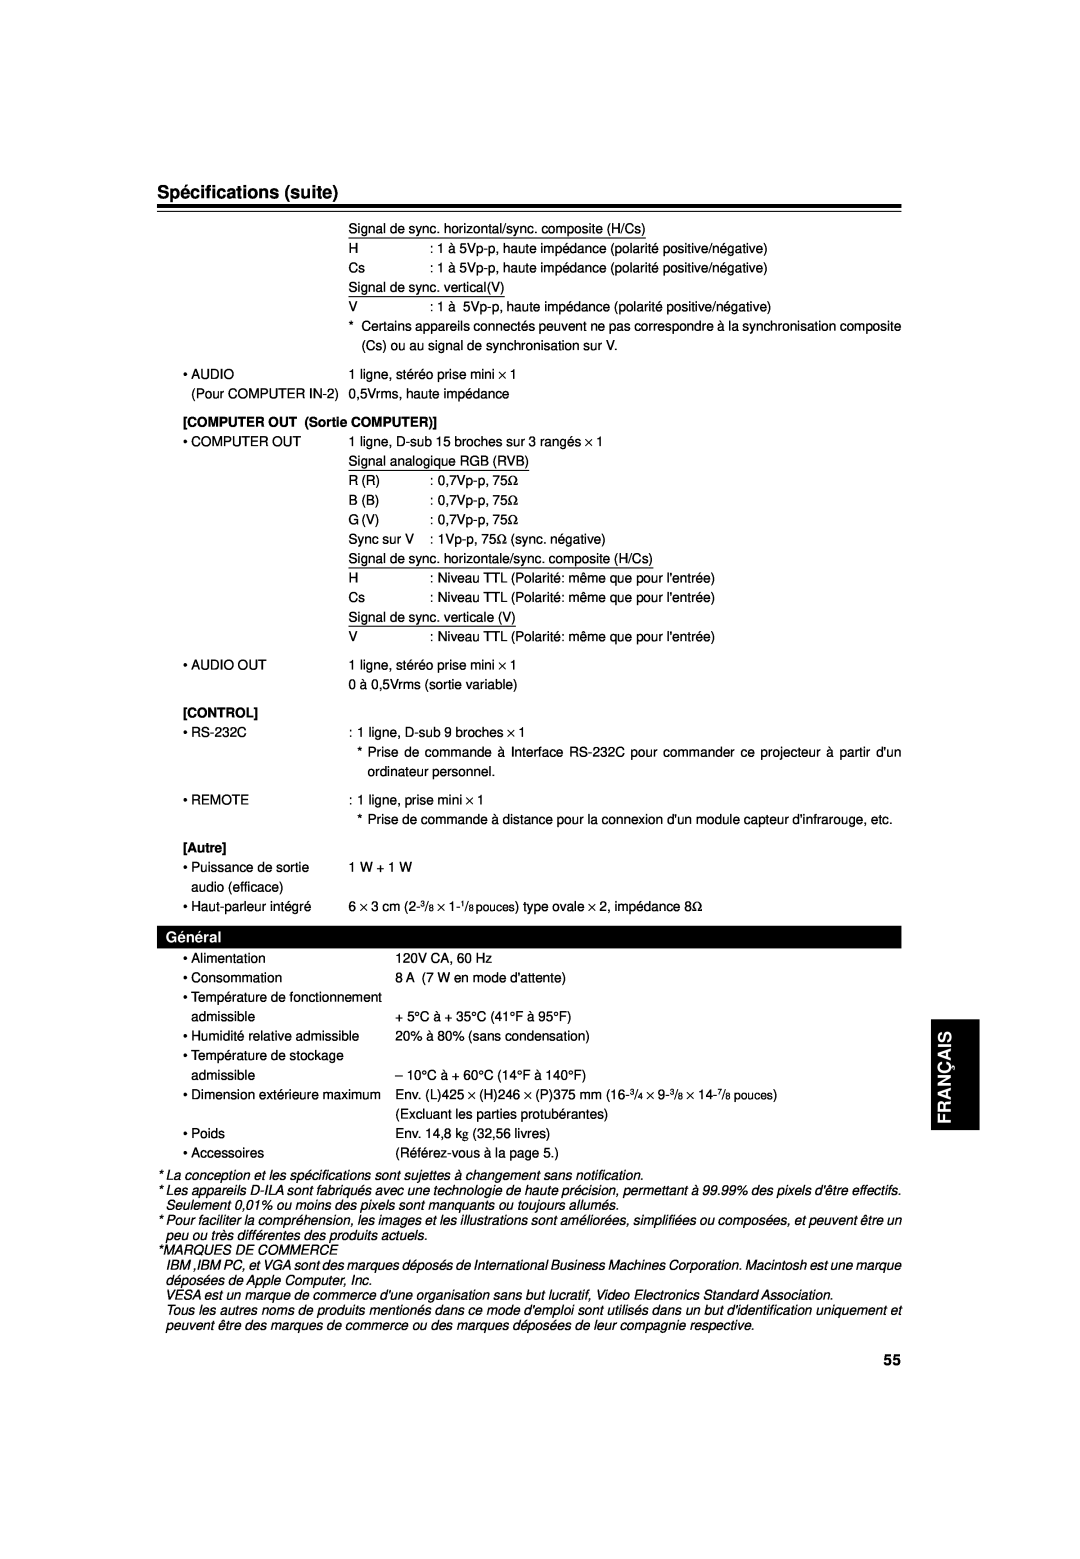 JVC DLA-G15U manual Spécifications suite, Français, Général, COMPUTER OUT Sortie COMPUTER, Control, Autre 